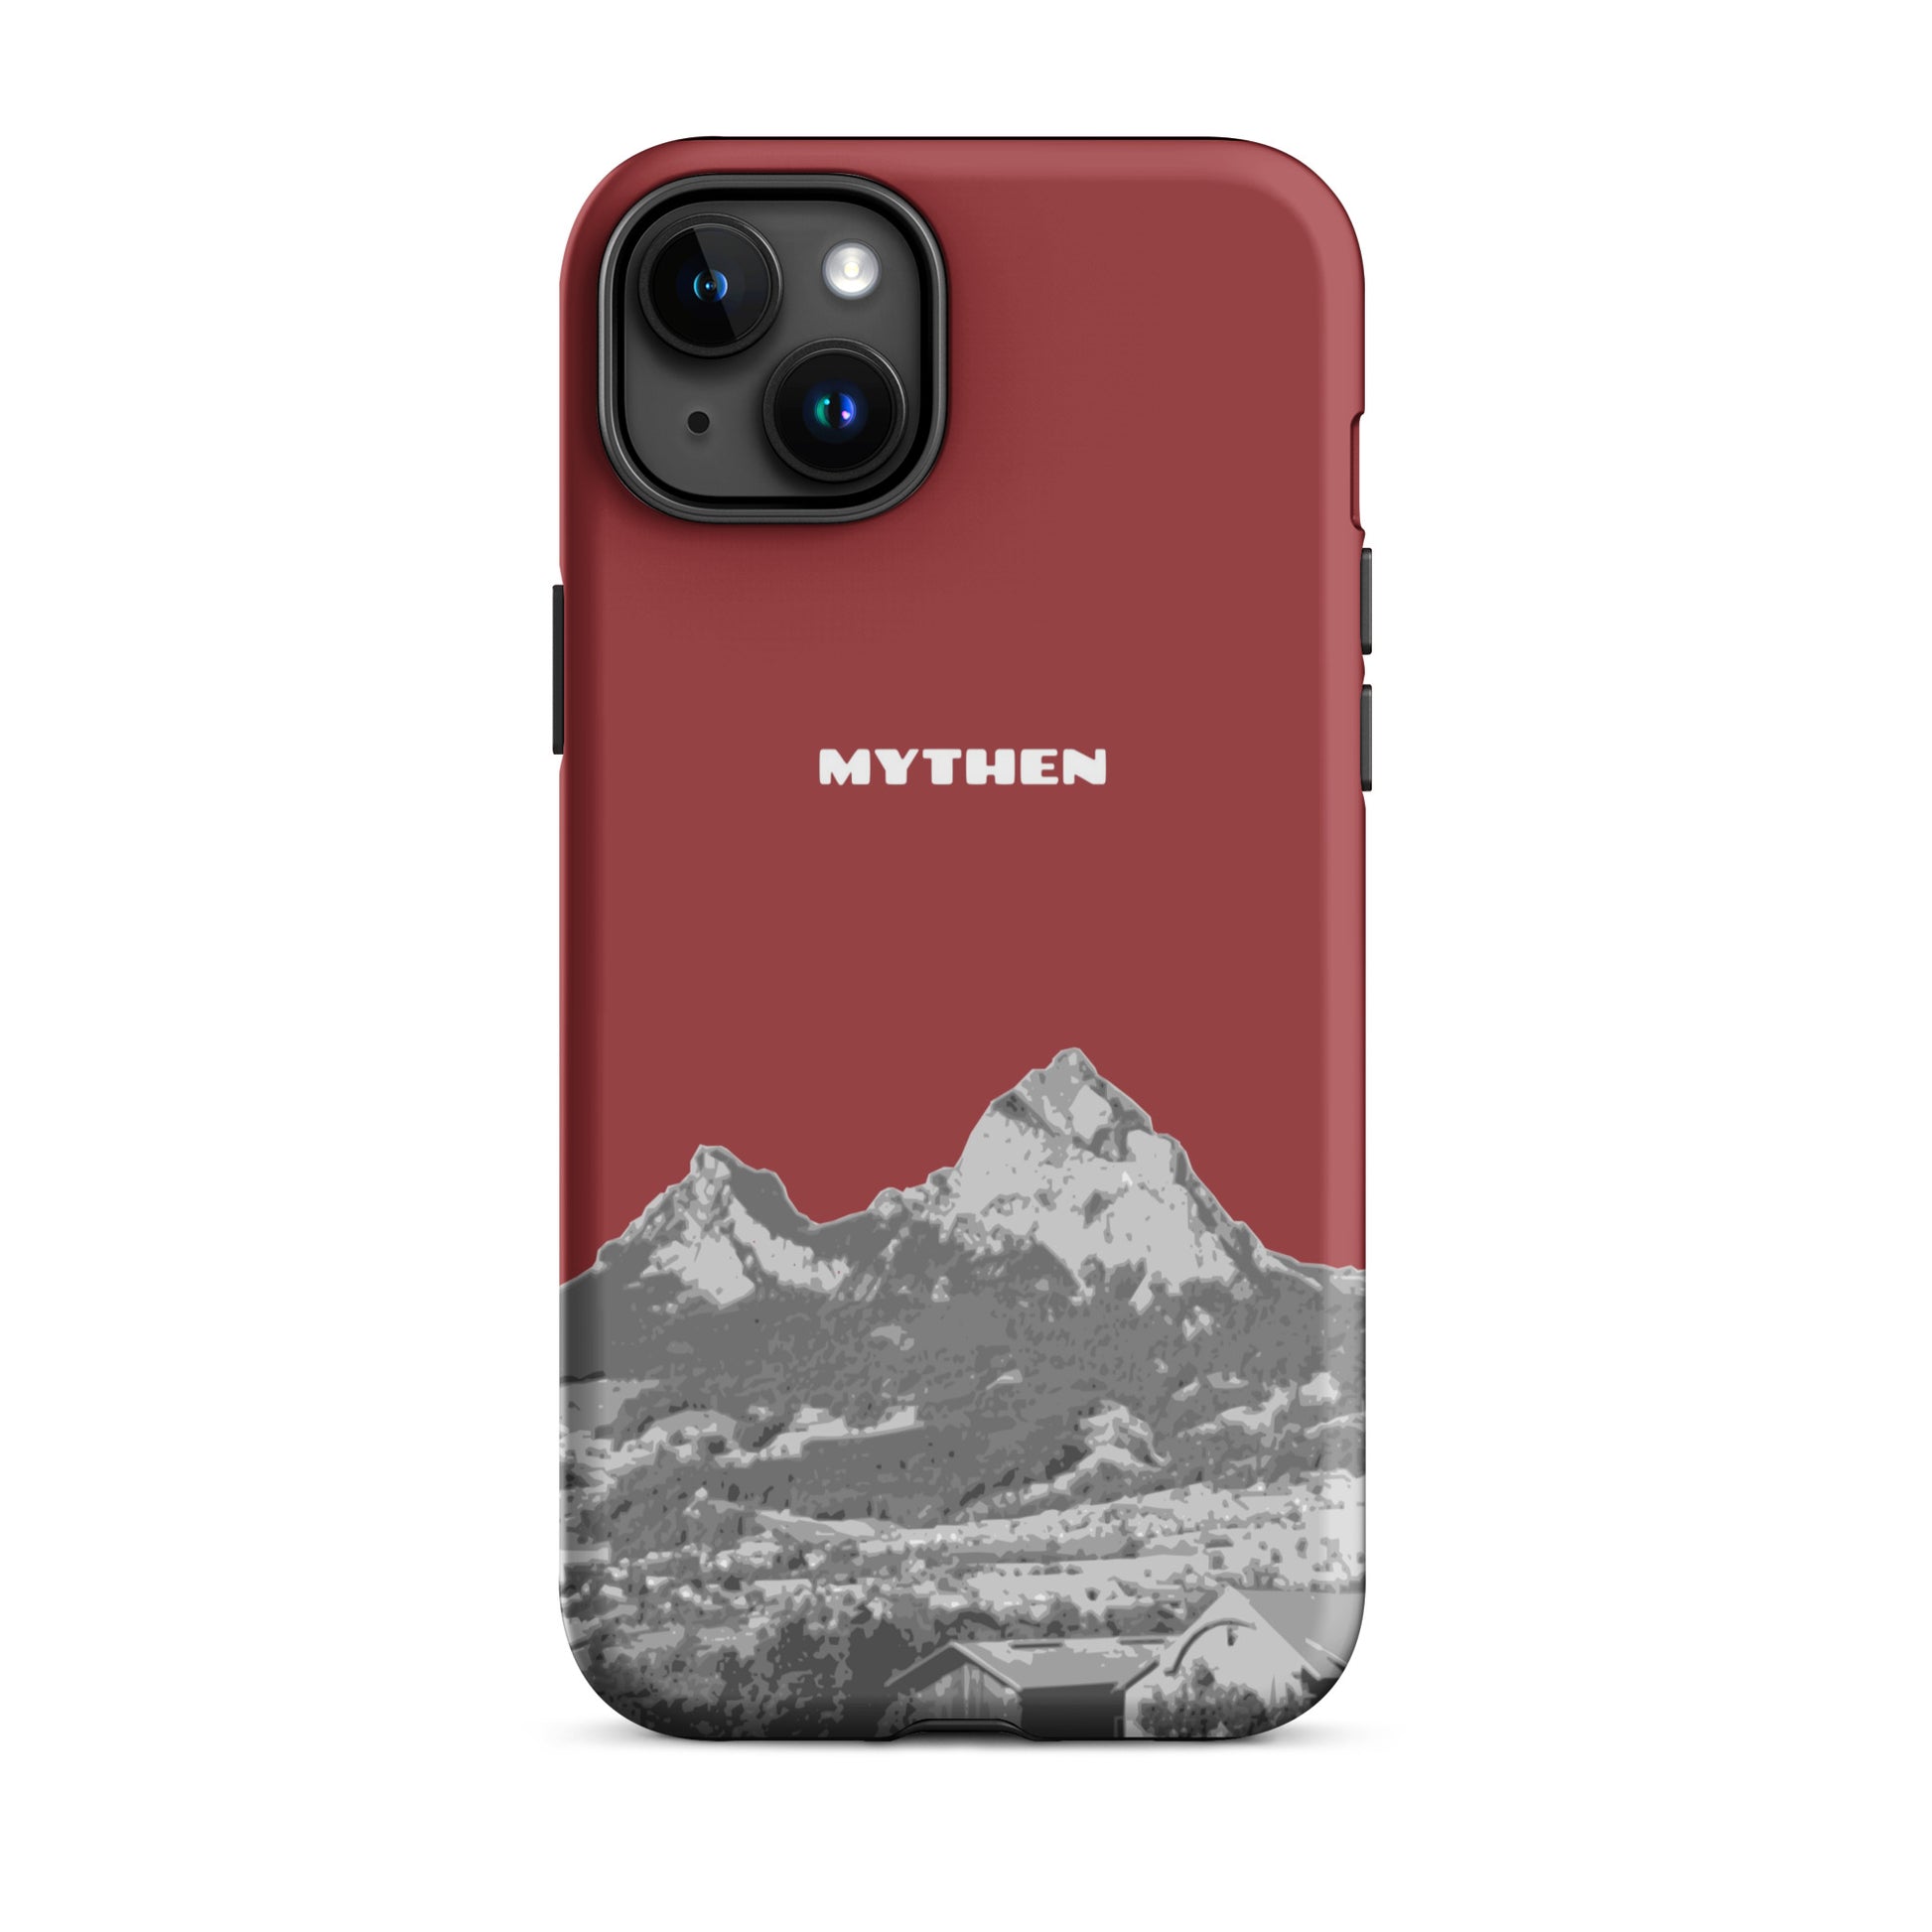 Hülle für das iPhone 15 Plus von Apple in der Farbe Rot, die den Grossen Mythen und den Kleinen Mythen bei Schwyz zeigt. 